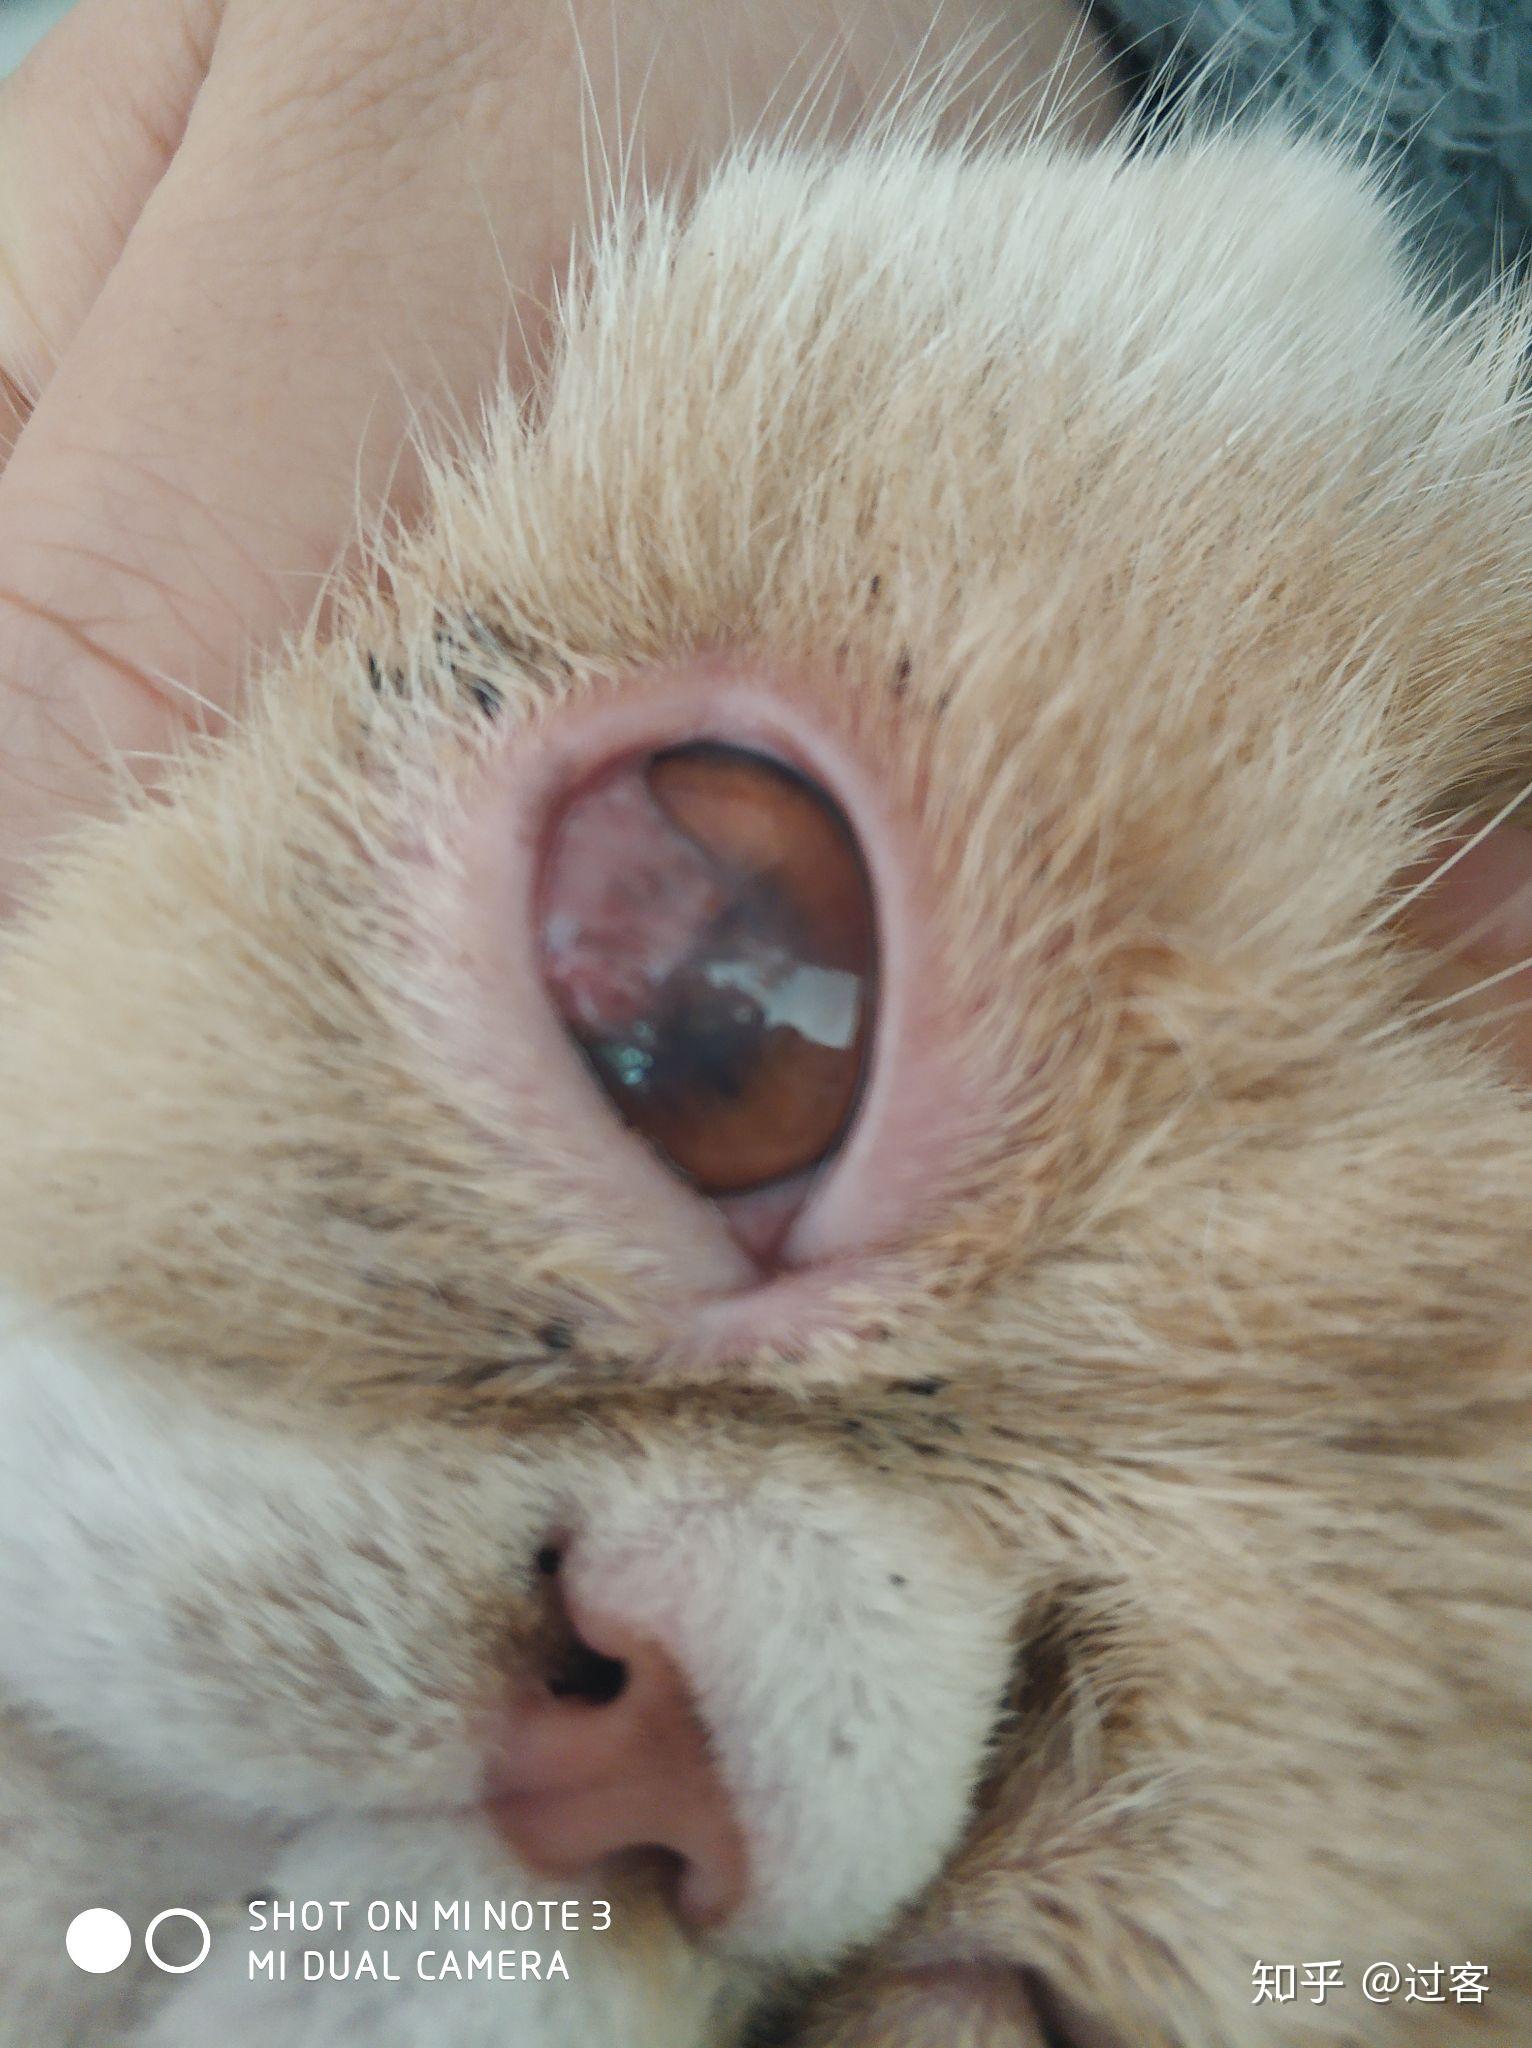 猫咪葡萄膜炎症状图片图片